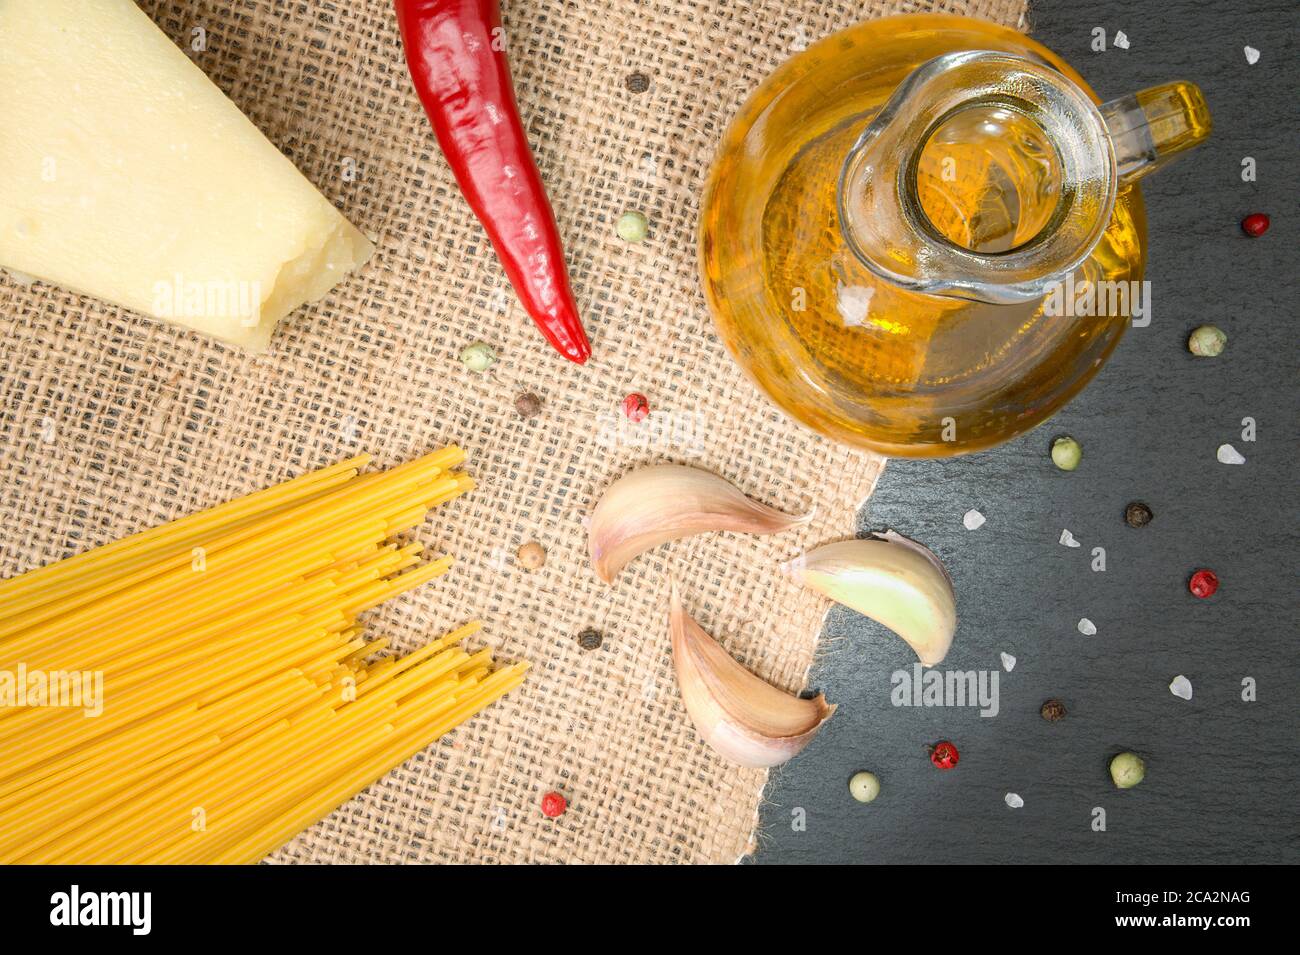 Nahaufnahme der Zutaten von 'Spaghetti Aglio e Olio', teils auf einer Schieferplatte und teils auf einer Sackleine. Mit Spaghetti, einem roten Paprika, einem Krug Olivenöl, ga Stockfoto